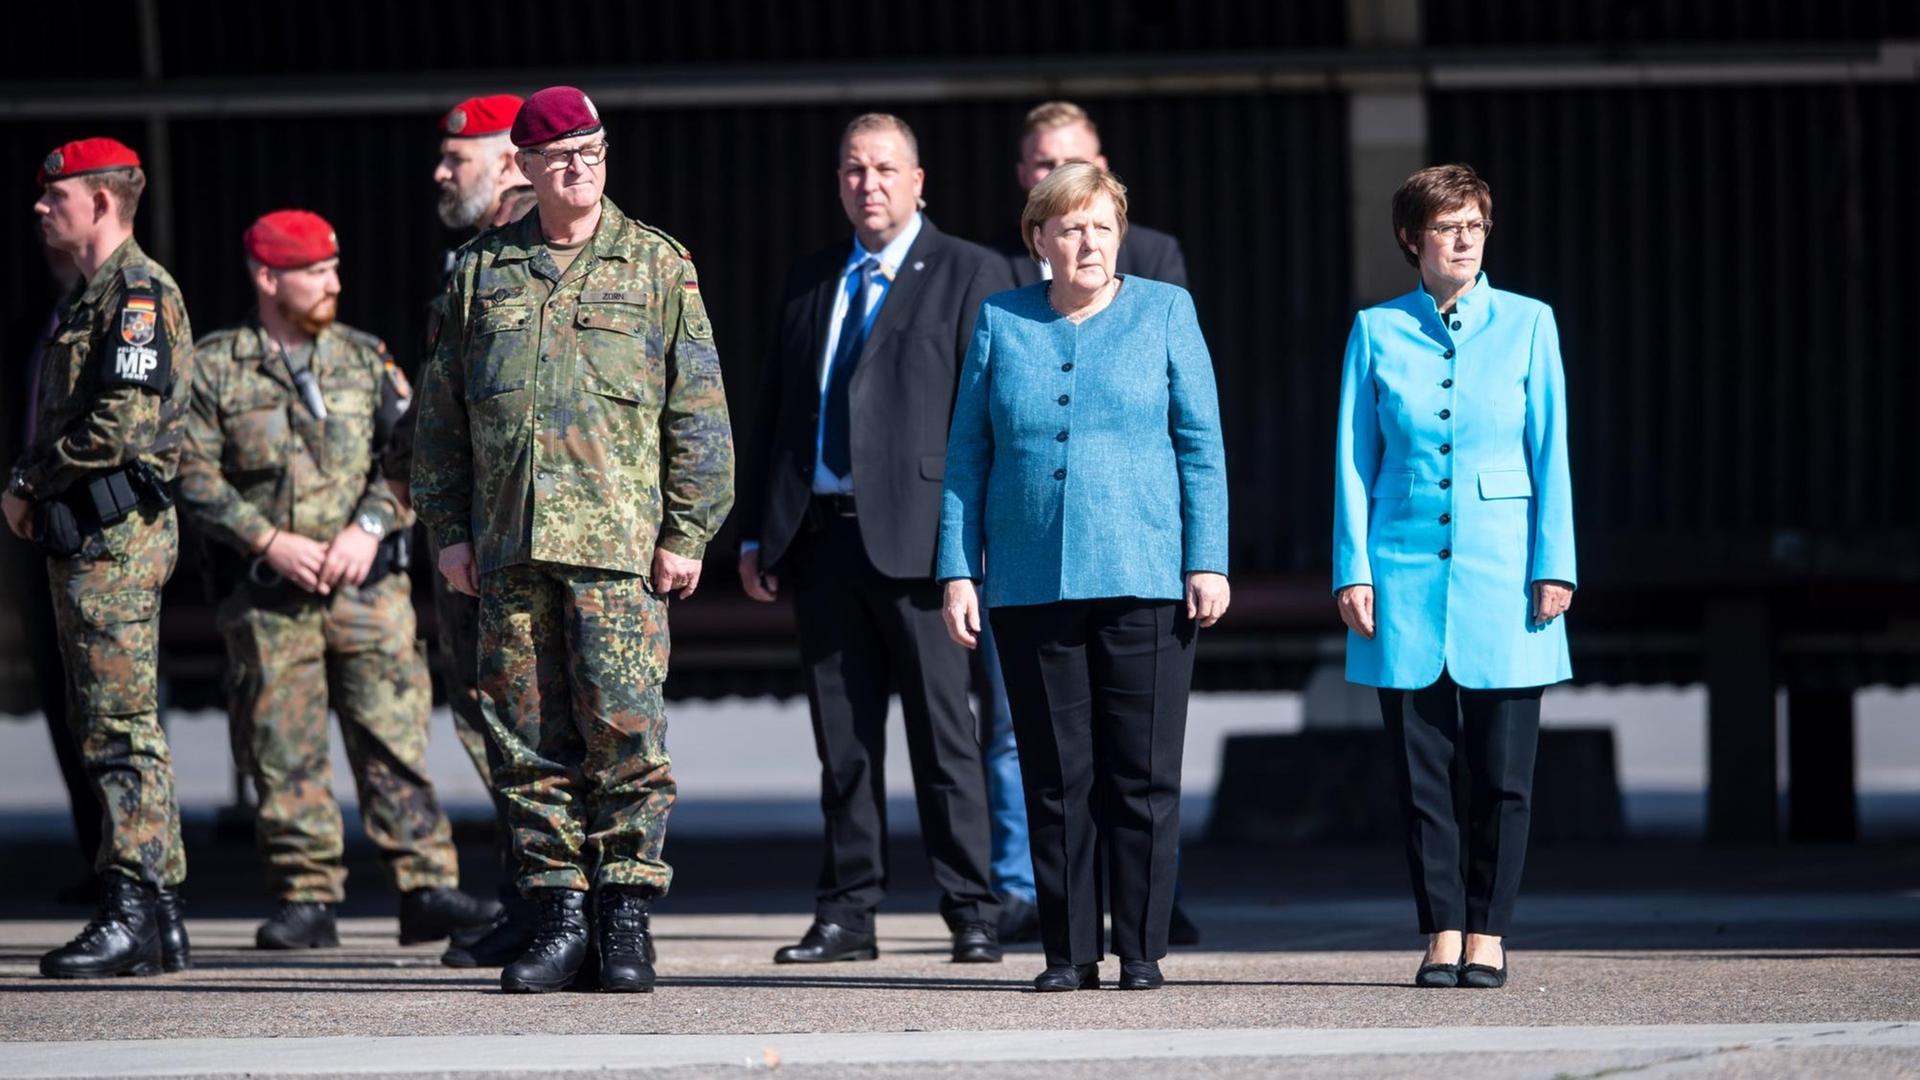 Die Bundeskanzlerin und Frau Kramp-Karrenbauer stehen neben mehreren Soldaten und anderen Wüdenträgern. Beide tragen mittelblaue Oberteile.